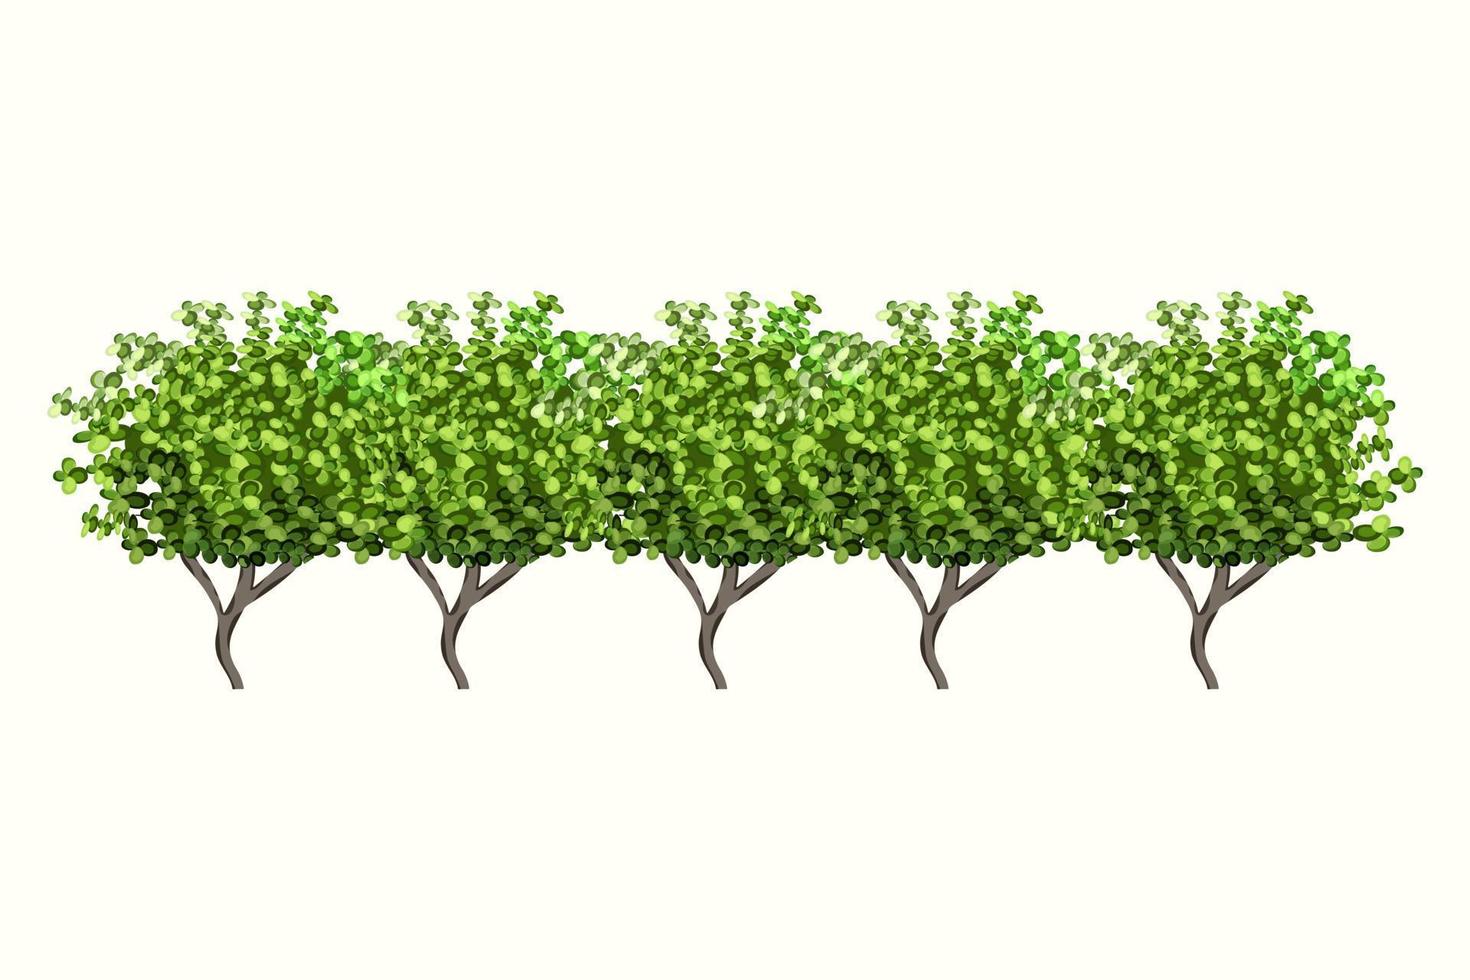 Planta verde ornamental en forma de seto.Arco de ivy.Arbusto de jardín realista, arbusto de temporada, boj, follaje de arbusto de corona de árbol. vector